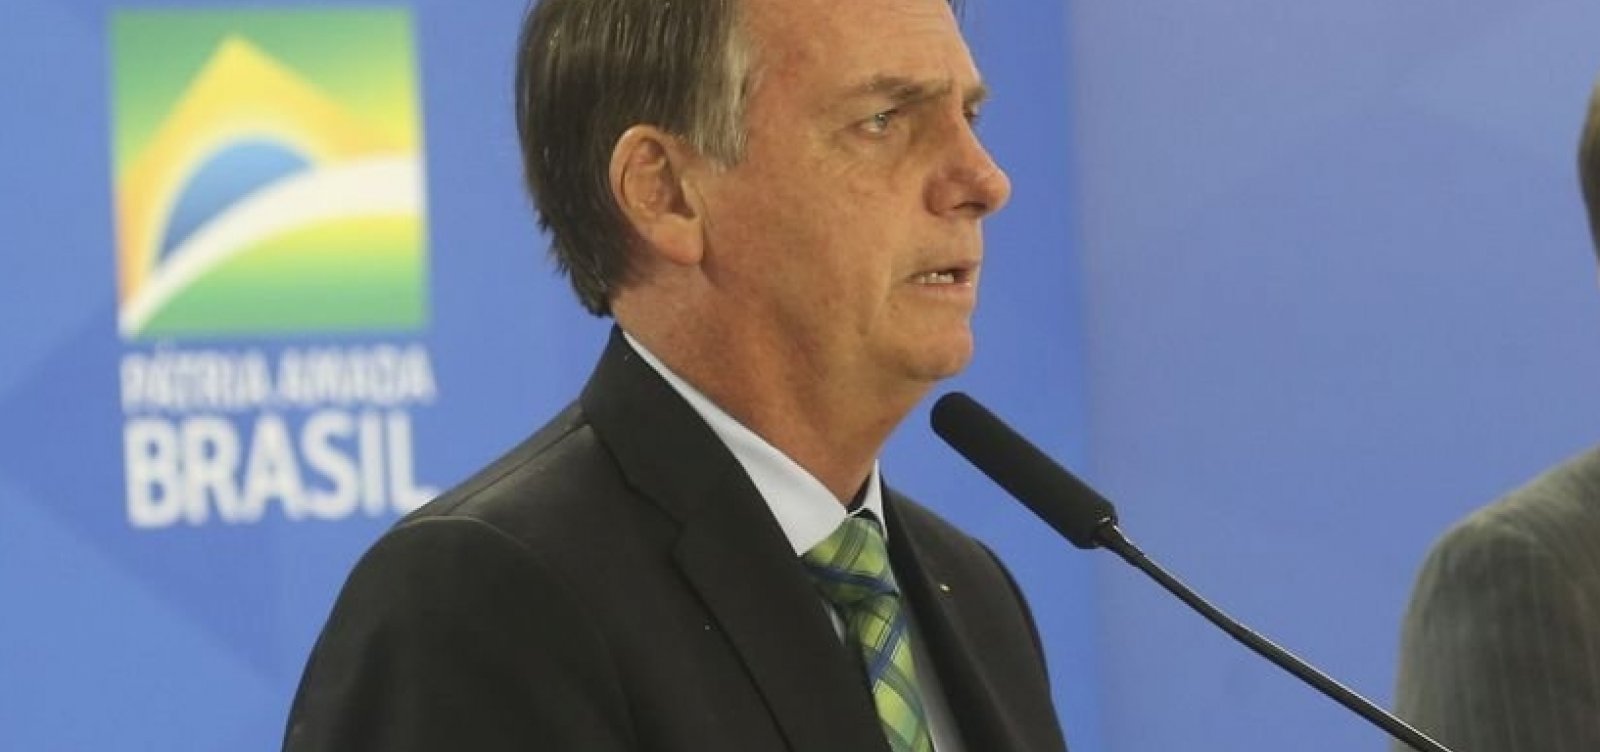 Bolsonaro discursará em sessão sobre tecnologia e inovação na Cúpula do G20